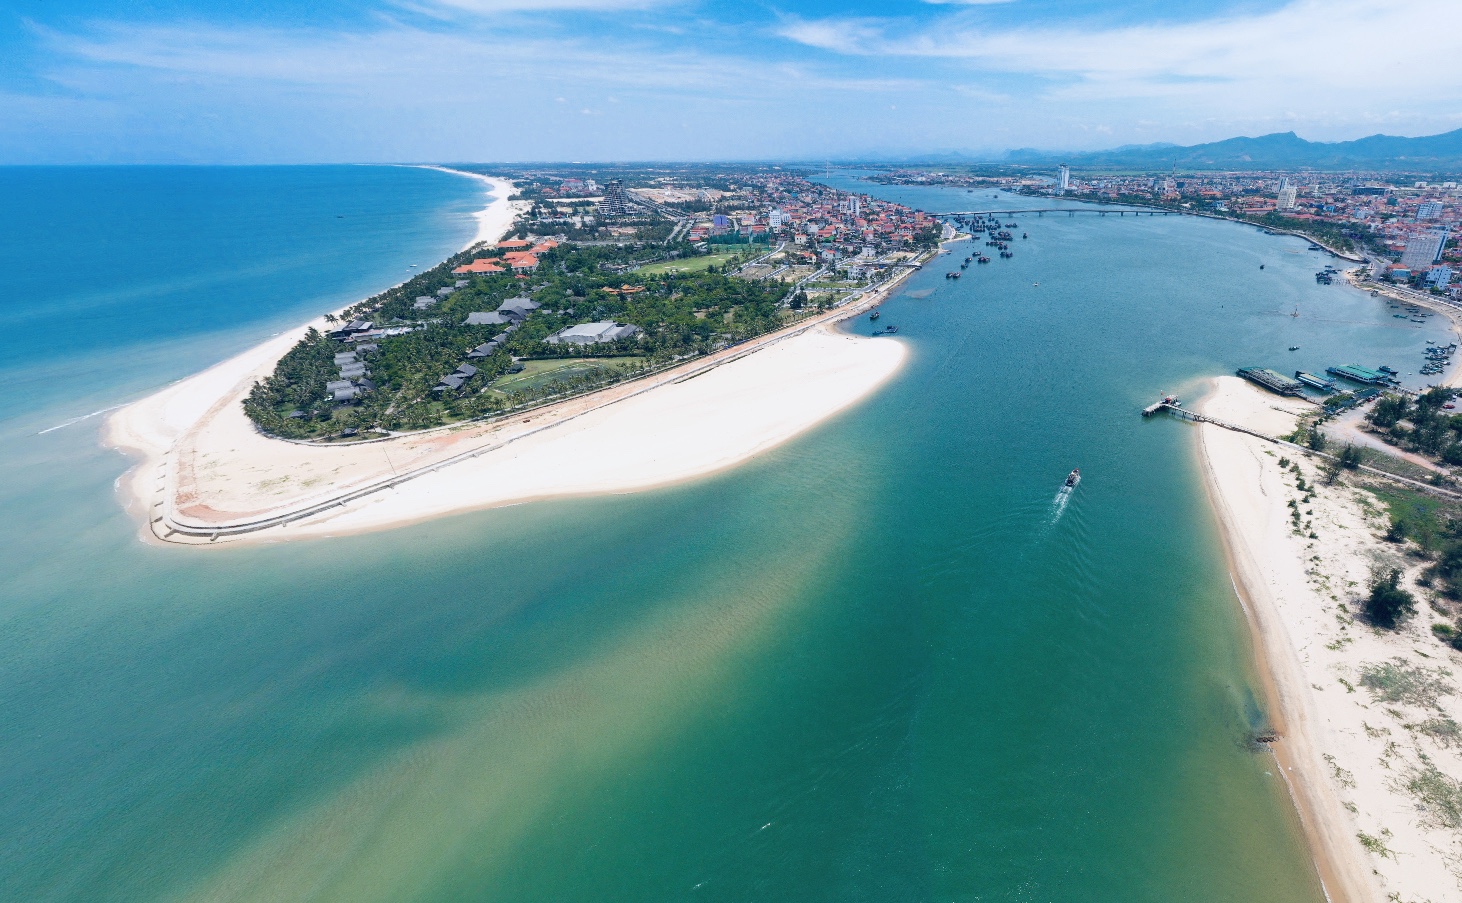 Bãi biển Nhật Lệ - Top 10 bãi biển đẹp nhất Việt Nam. Điểm du lịch hấp dẫn nhất tại Quảng Bình